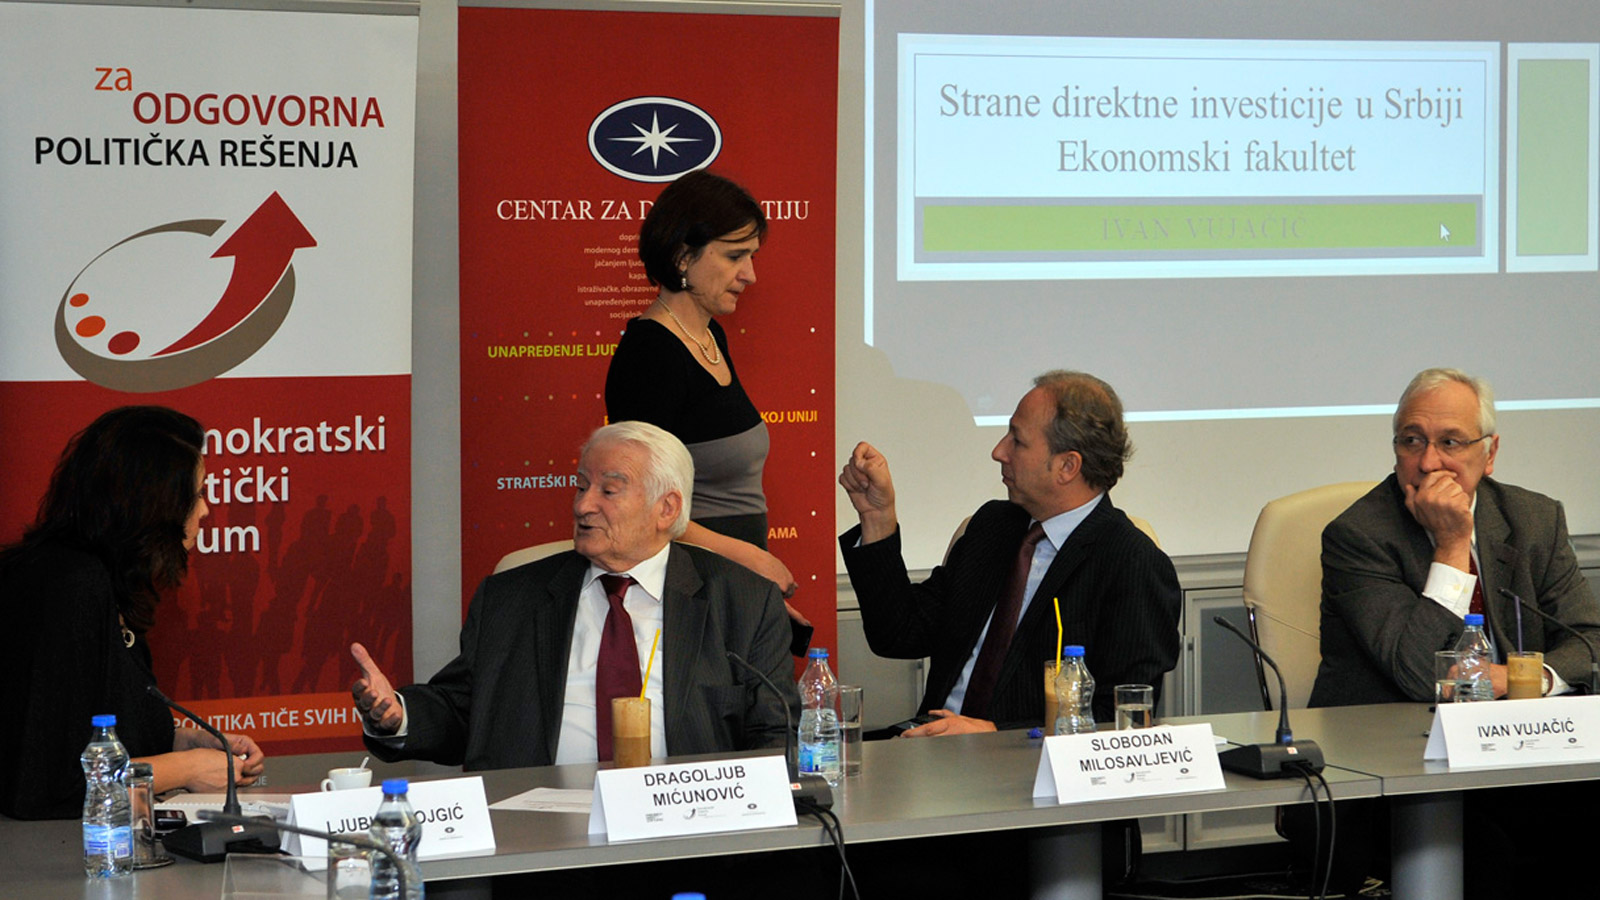 Debata političkog foruma: Kako oporaviti ekonomiju Srbije?